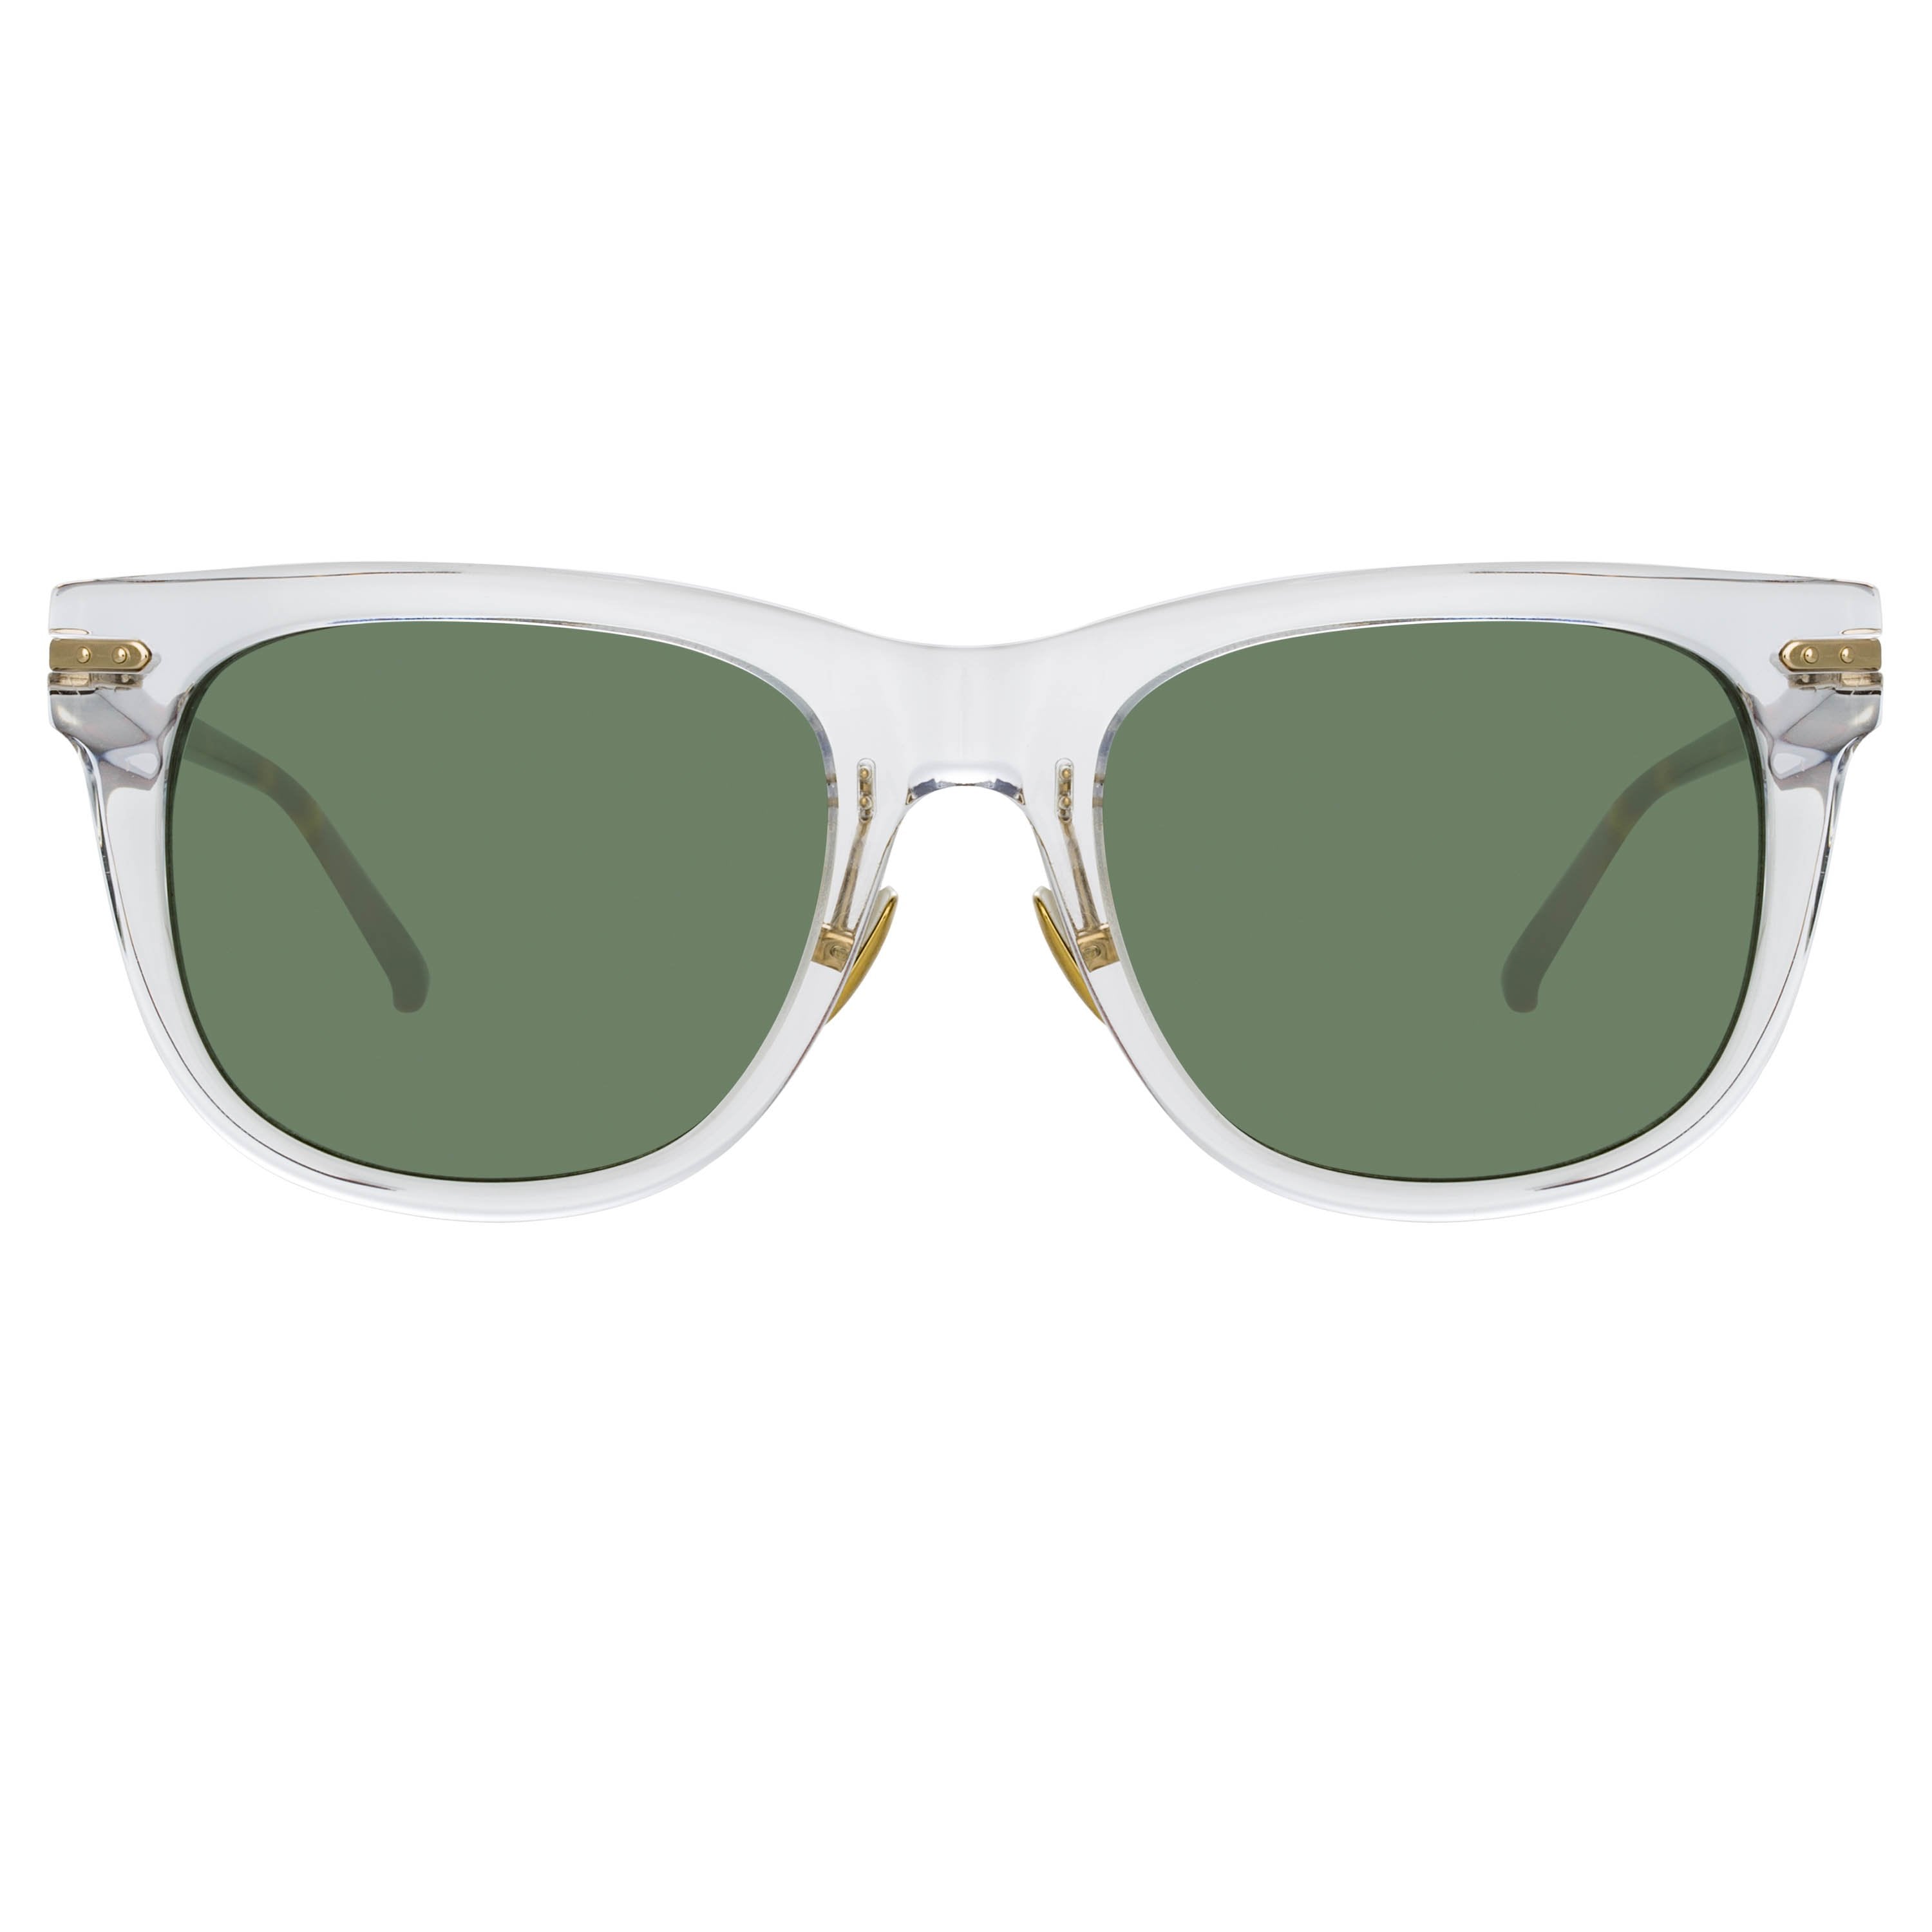 Color_LF43AC6SUN - Chrysler A D-Frame Sunglasses in Clear